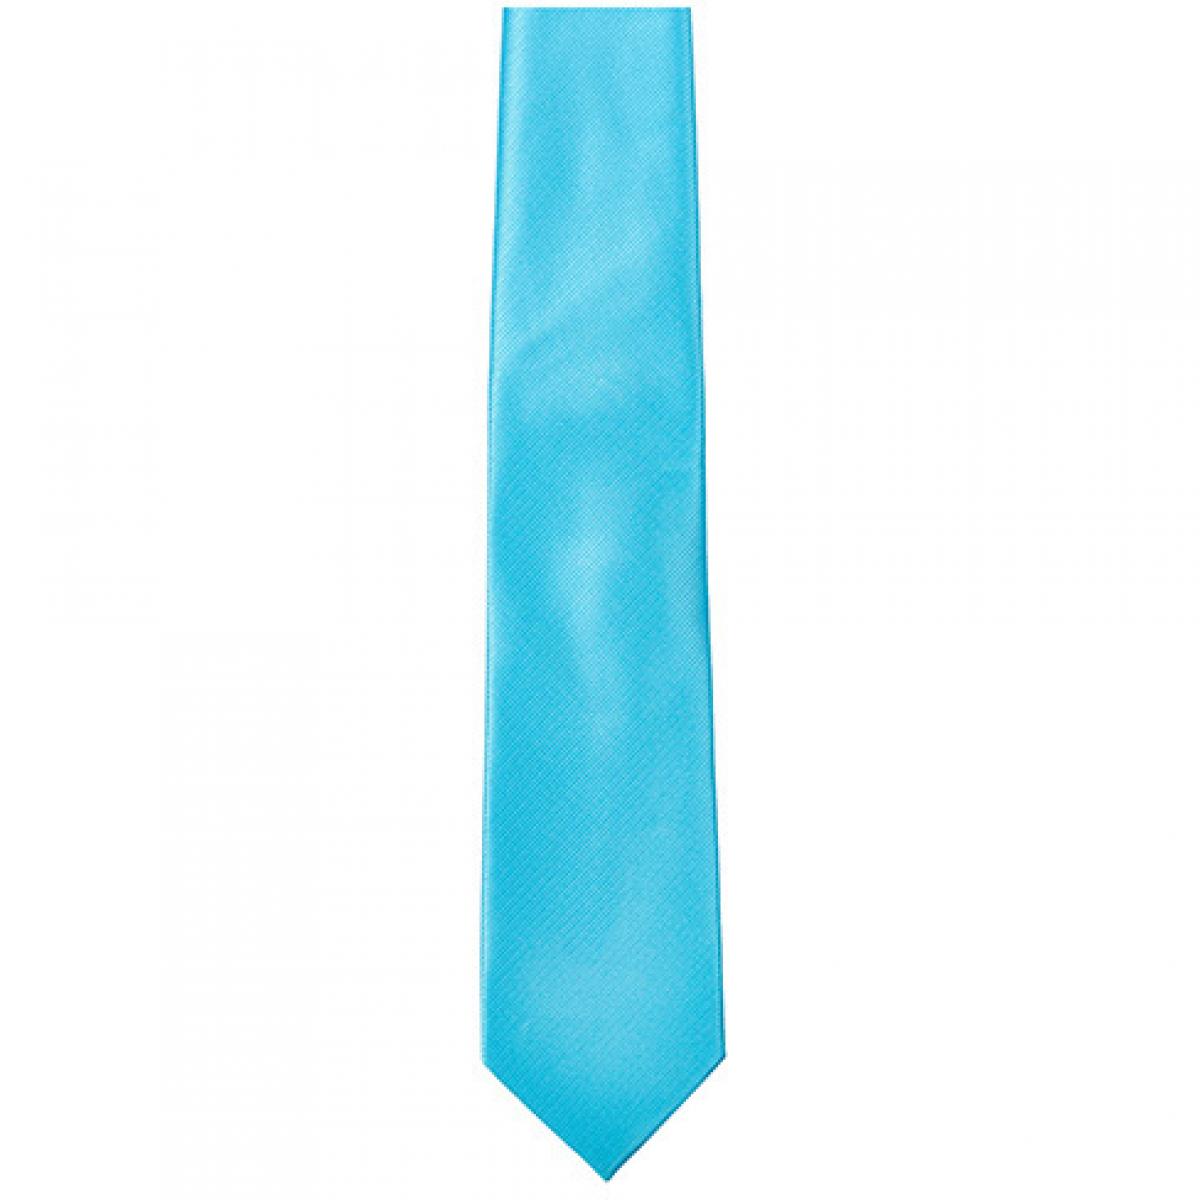 Hersteller: TYTO Herstellernummer: TT902 Artikelbezeichnung: Twill Tie / 144 x 8,5cm Farbe: Turquoise